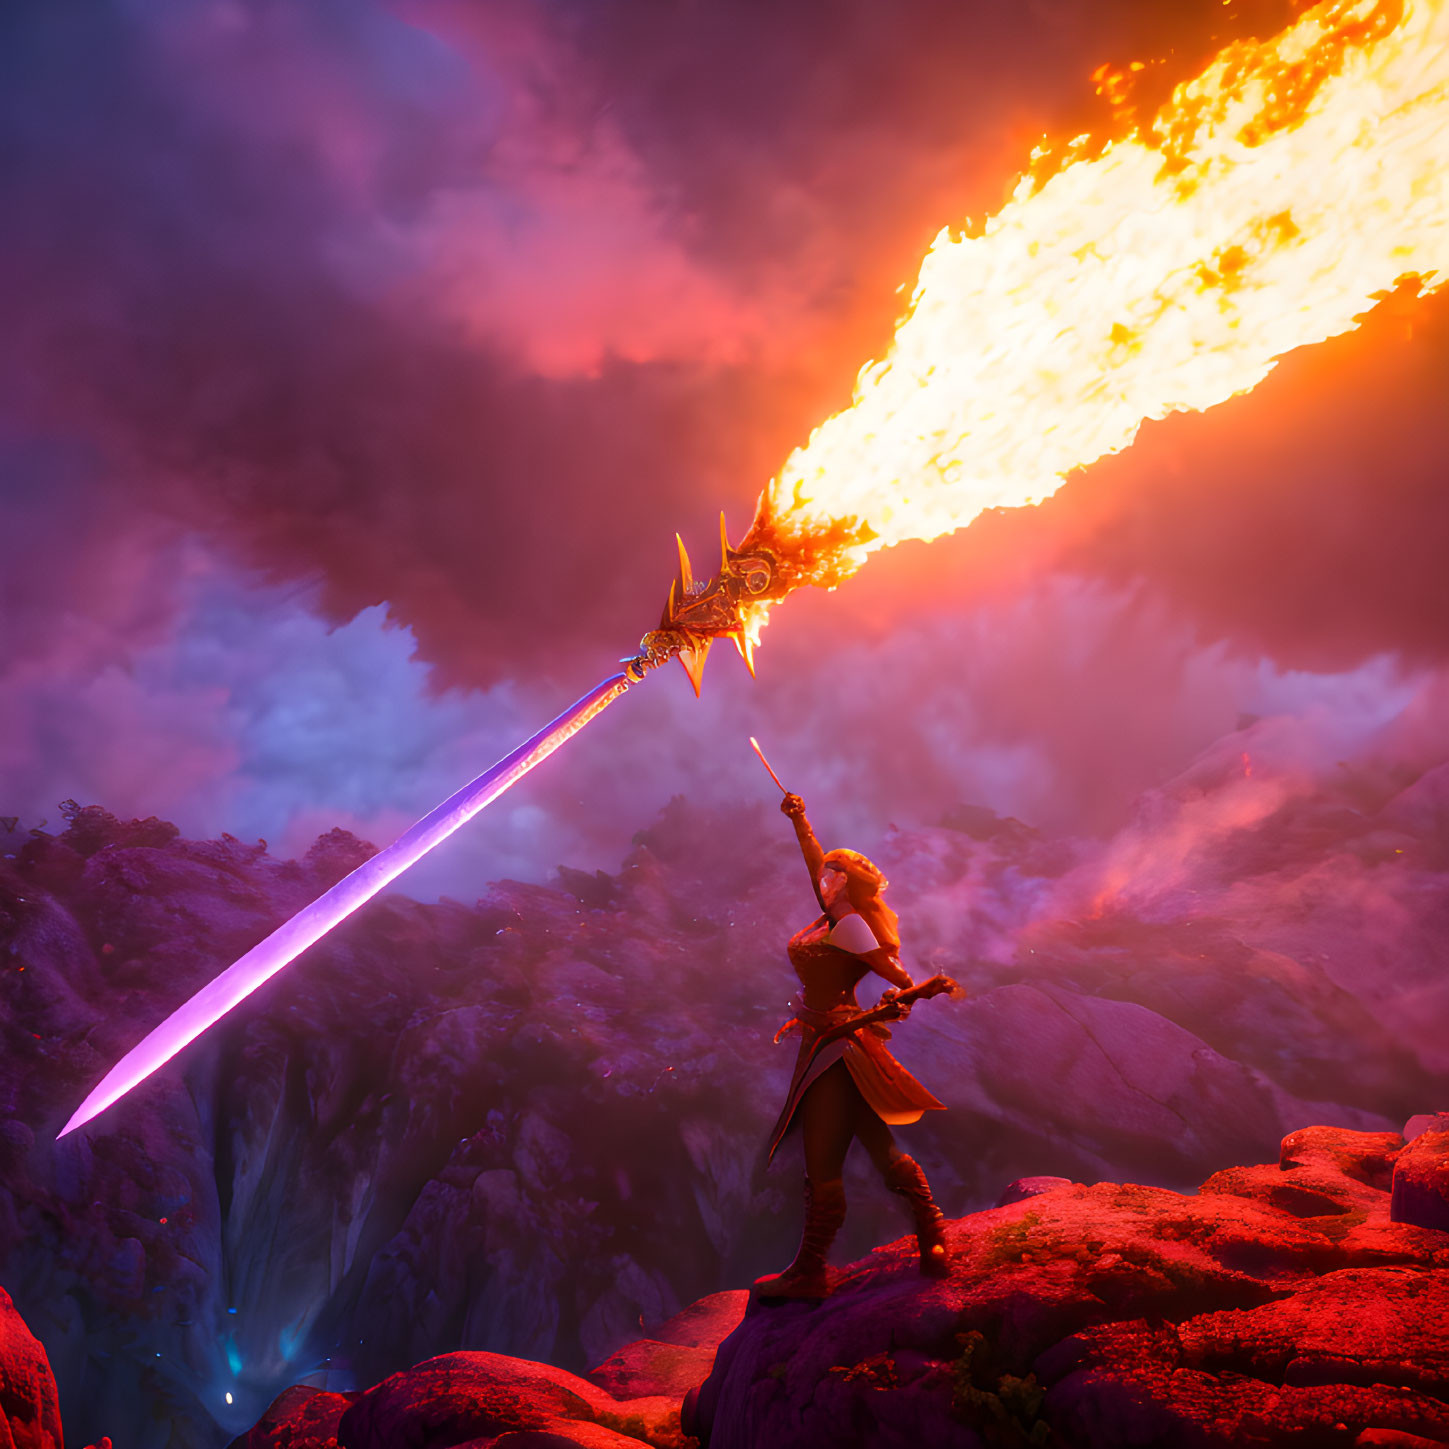 Warrior woman with fiery sword on rocky terrain under red sky